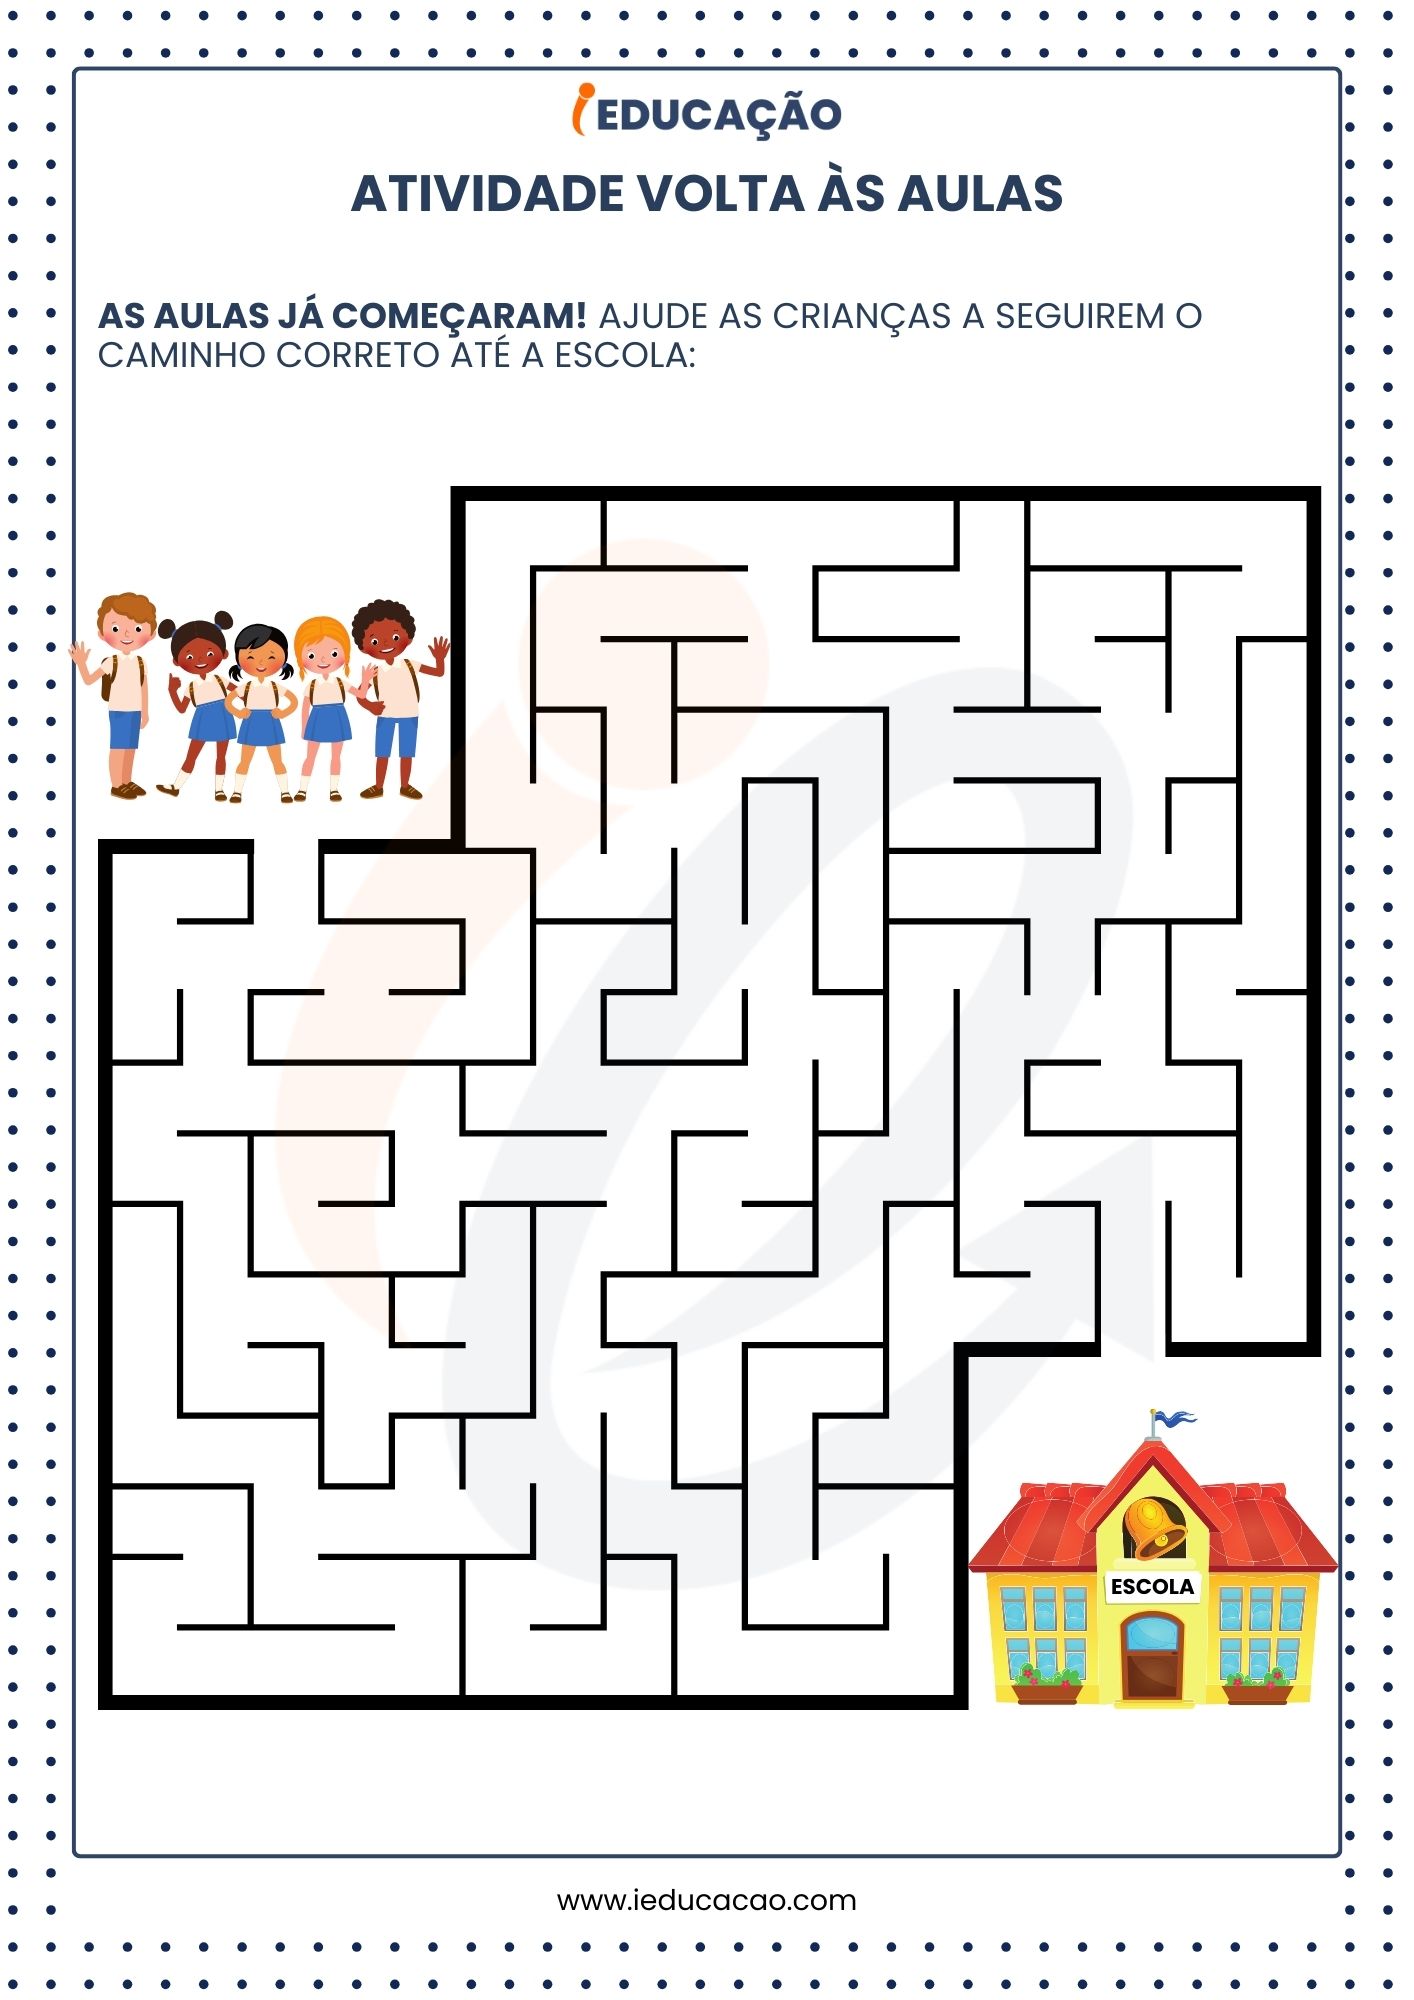 Atividades Volta às Aulas para Educação Infantil - Atividade Labirinto.jpg